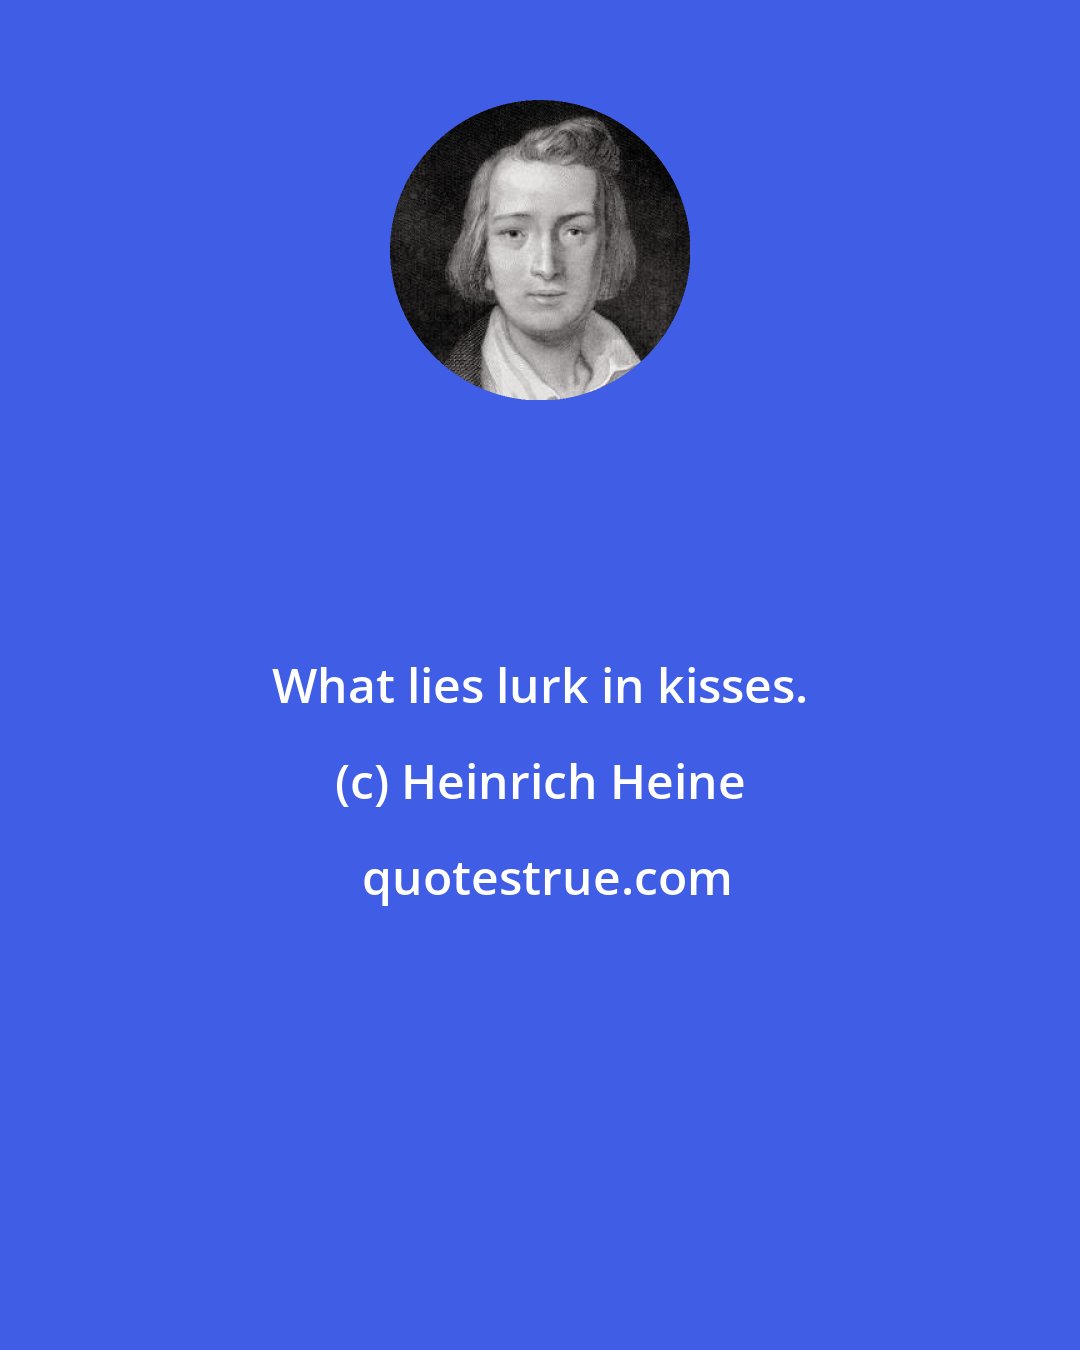 Heinrich Heine: What lies lurk in kisses.